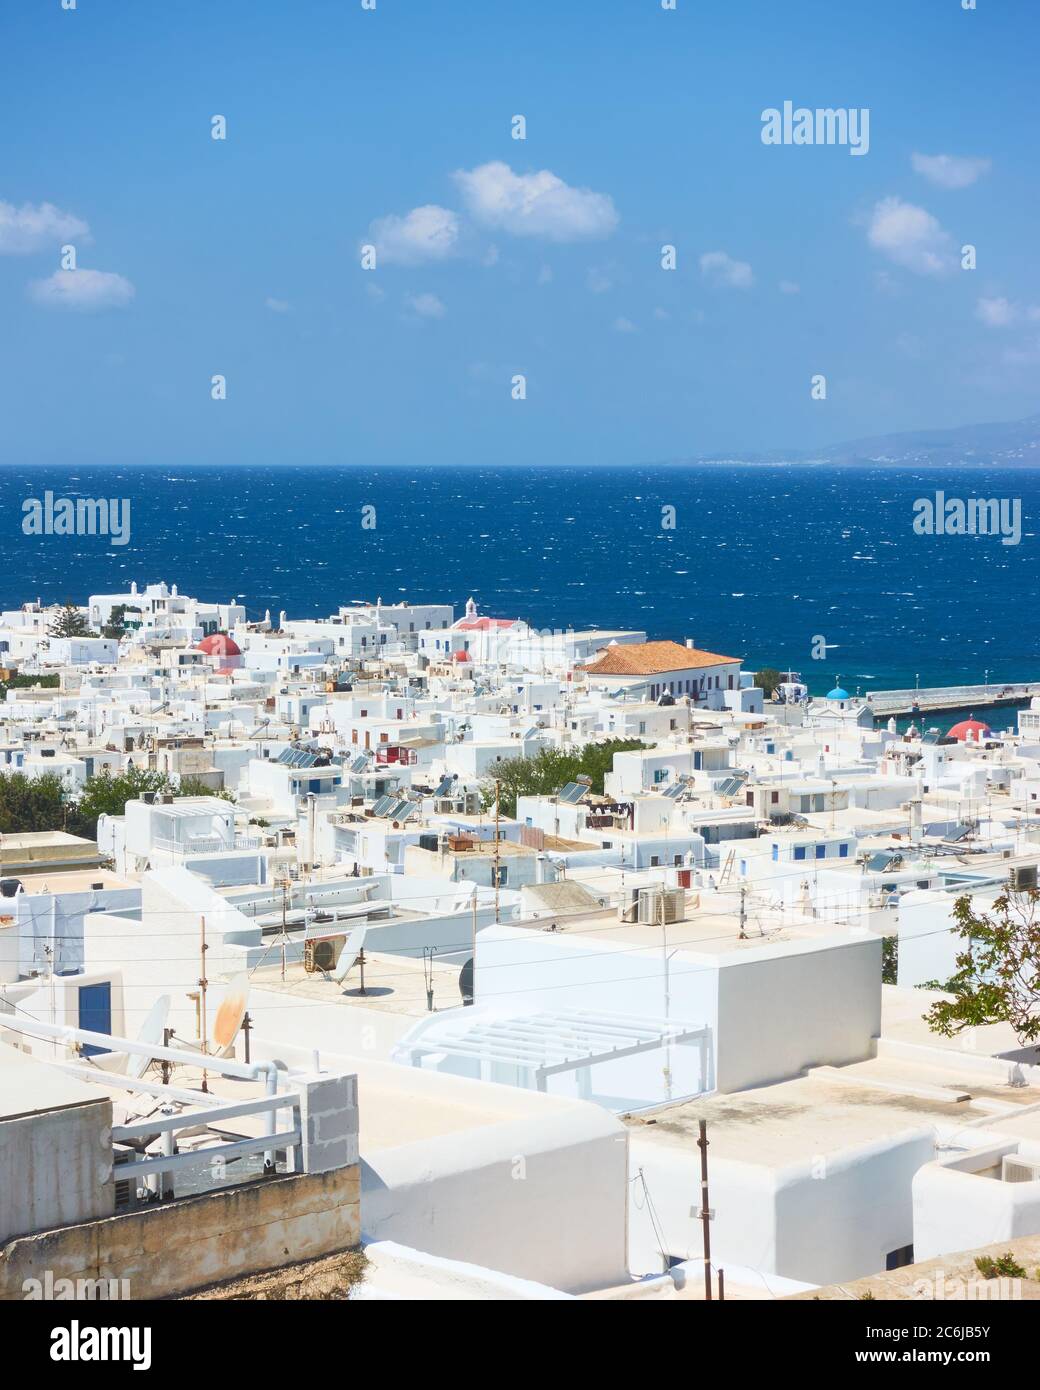 Mykonos town by the sea, Greece. Greek scenery Stock Photo